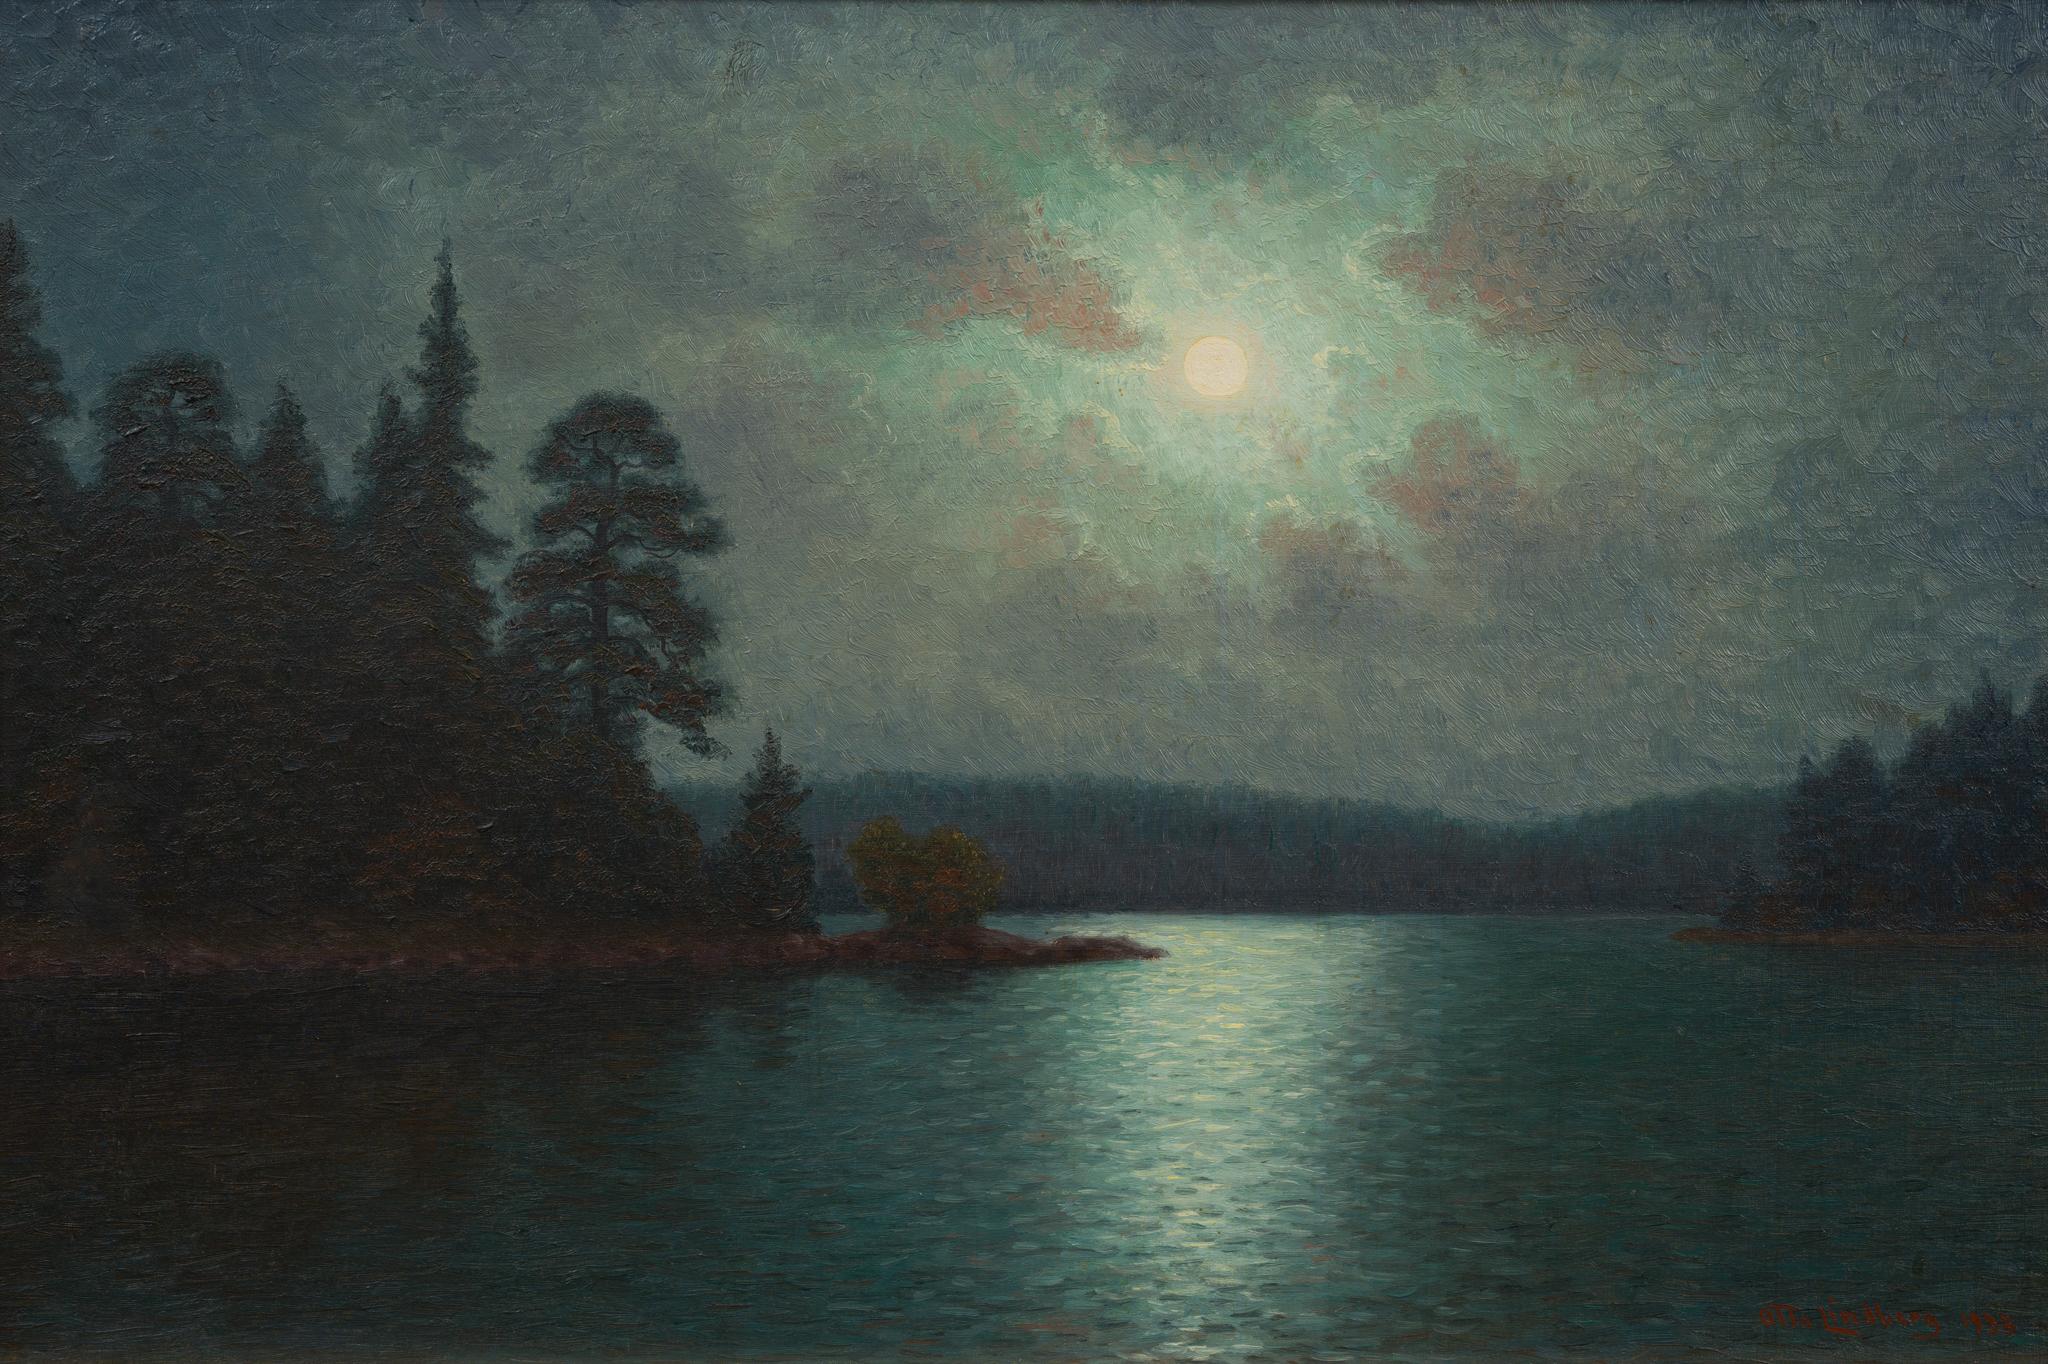 Le "Clair de lune sur le lac" d'Otto Lindberg est un témoignage remarquable de la beauté sereine et de la tranquillité atmosphérique qui caractérisent les plus belles peintures de paysage. Créée en 1933, cette pièce évoque un moment de quiétude sous